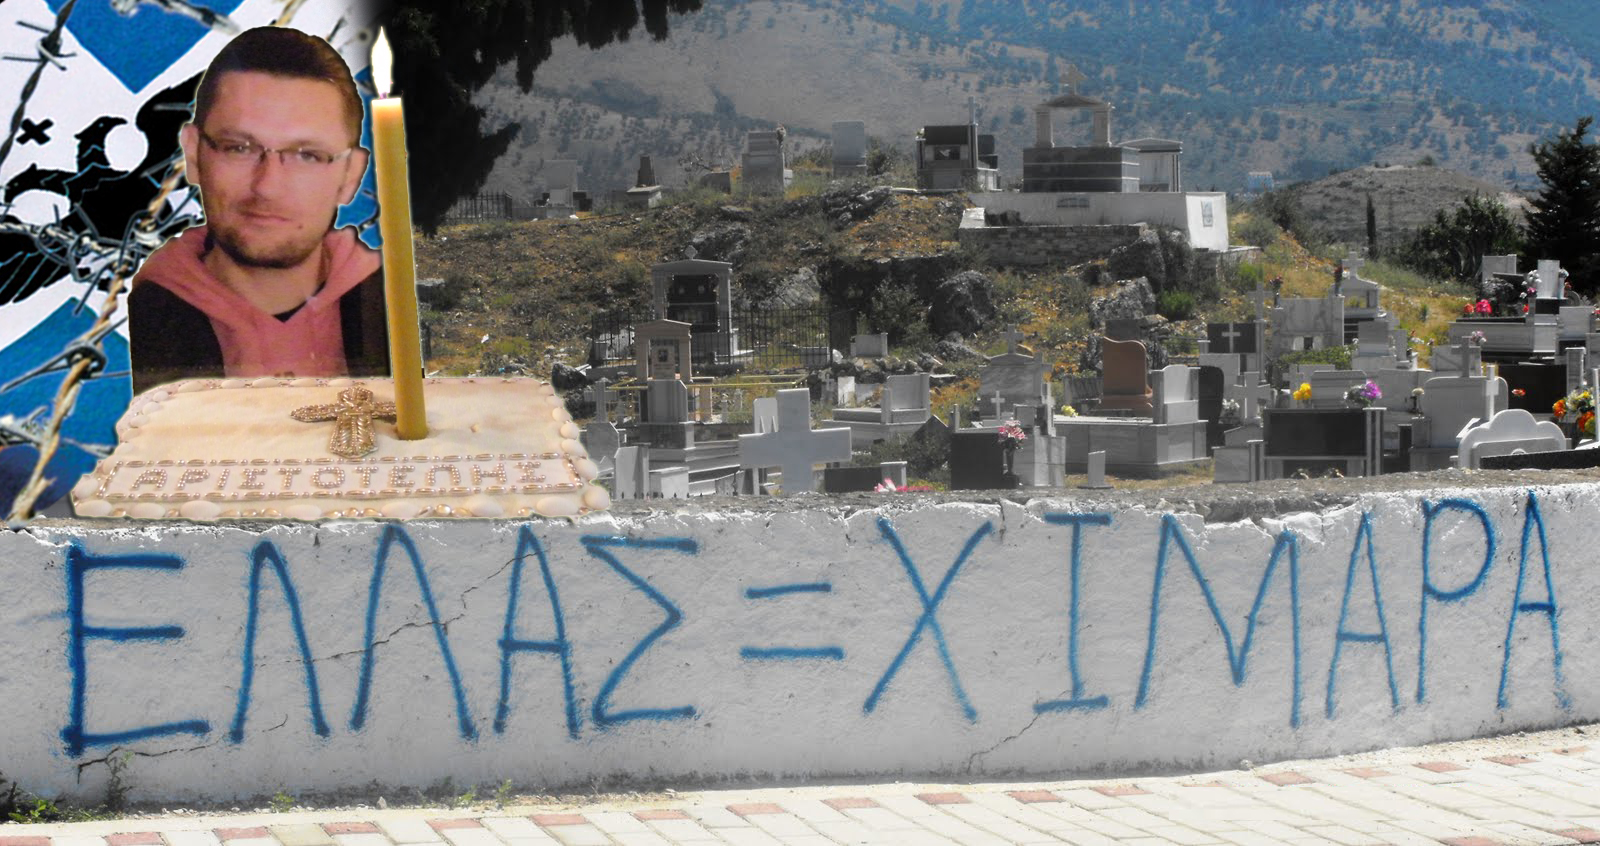 Σαν σήμερα: Αλβανοί δολοφόνησαν τον Αριστοτέλη Γκούμα στη Χιμάρα επειδή μιλούσε ελληνικά (βίντεο)